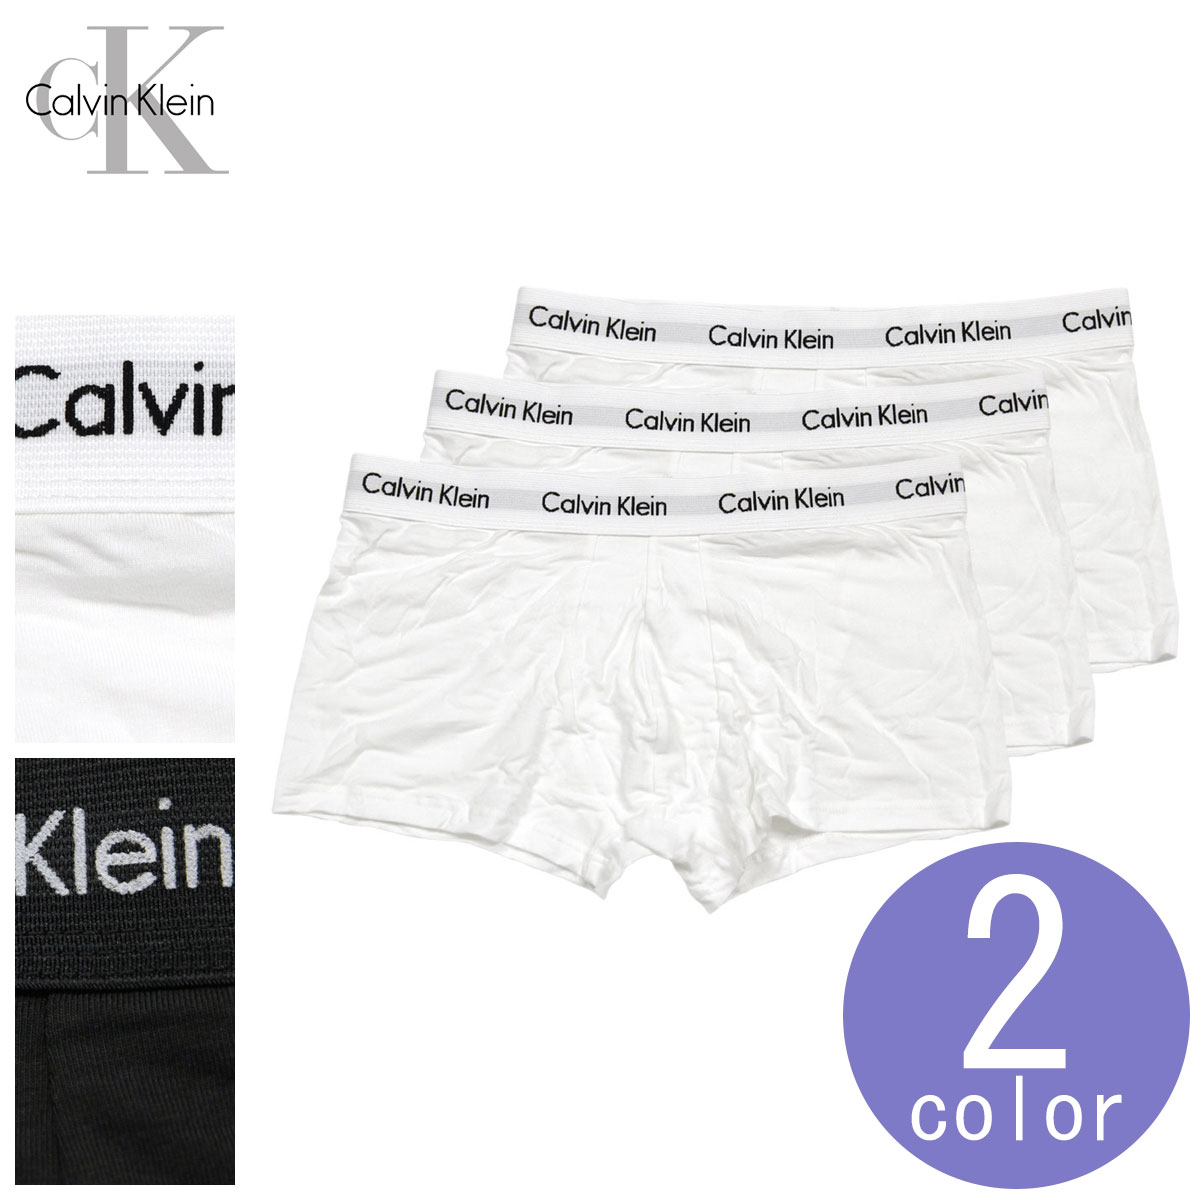 楽天市場 カルバンクライン Calvin Klein 正規品 メンズ ボクサーパンツ 3枚組 下着 アンダーウェア ローライズボクサー パンツ お得な3枚セット 3pack Low Rise Trunks ブランド品セレクトショップ Mixon